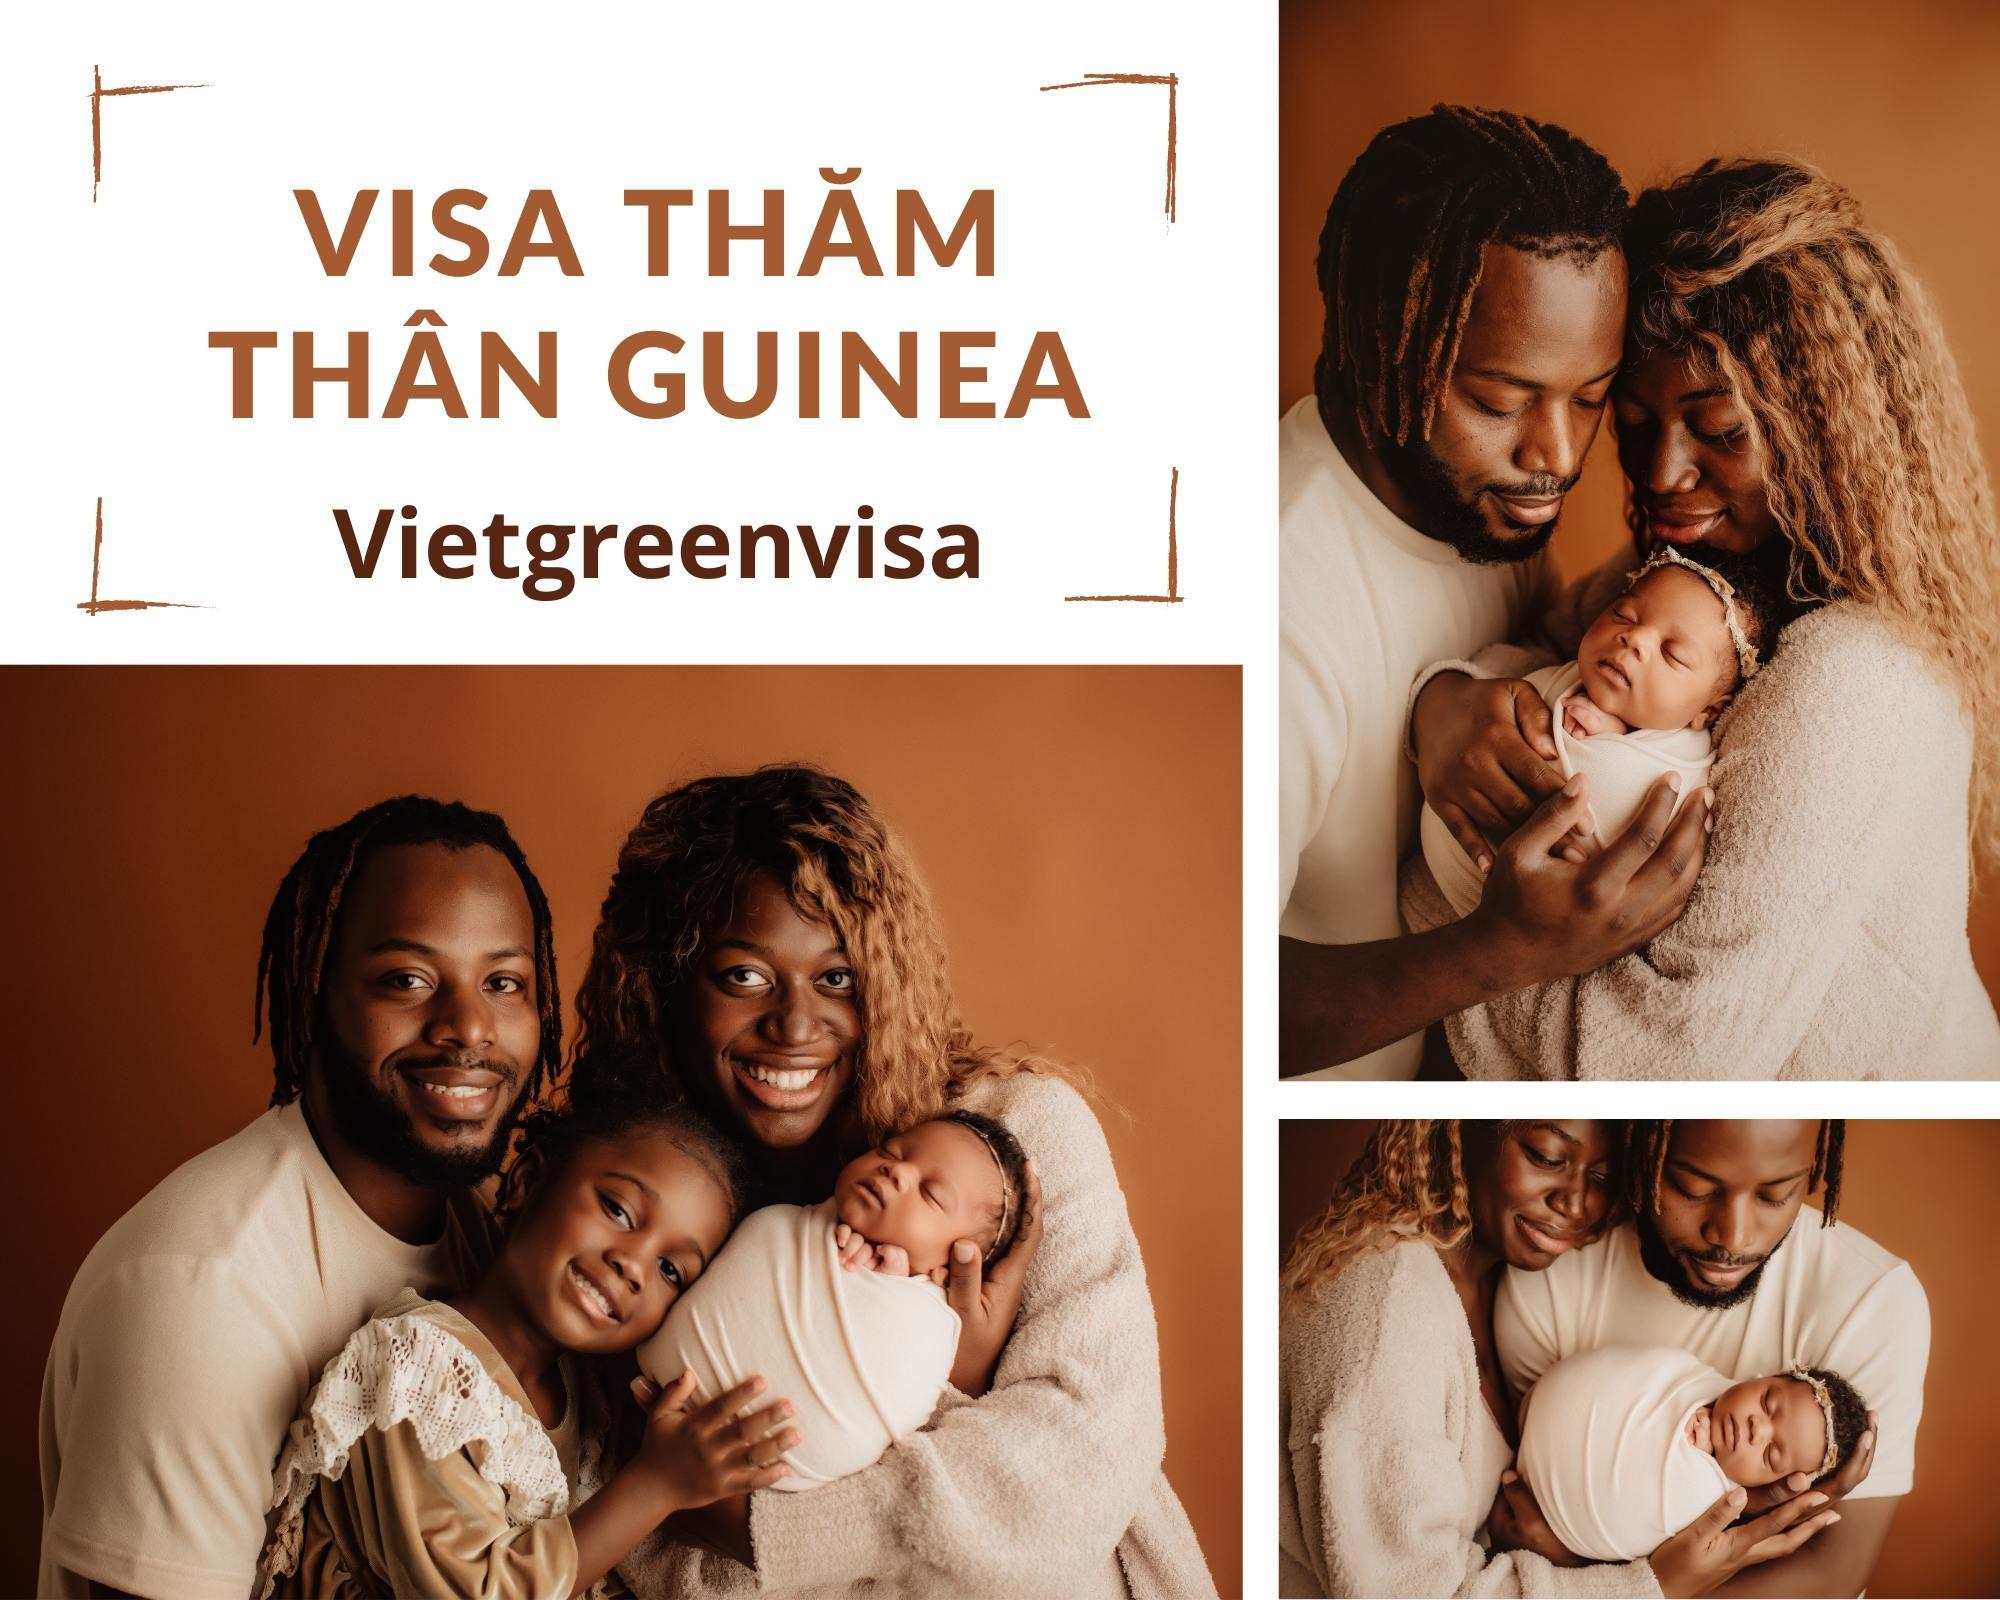 Hướng dẫn xin visa thăm thân Guinea trọn gói